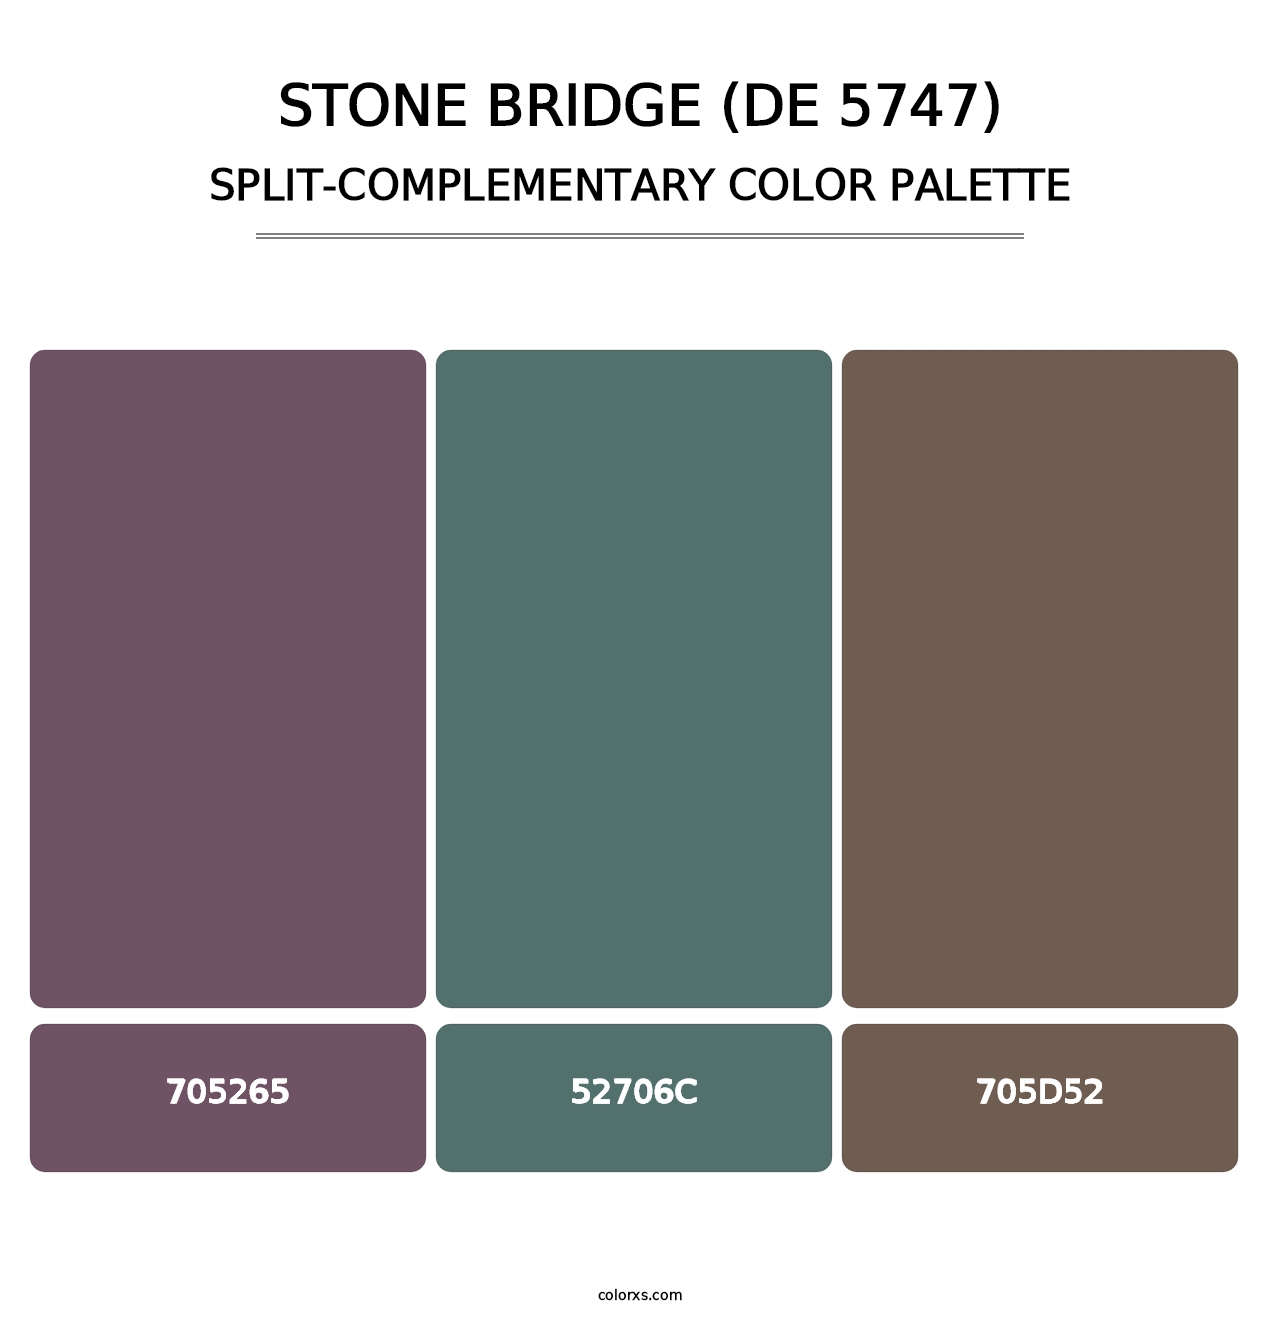 Stone Bridge (DE 5747) - Split-Complementary Color Palette